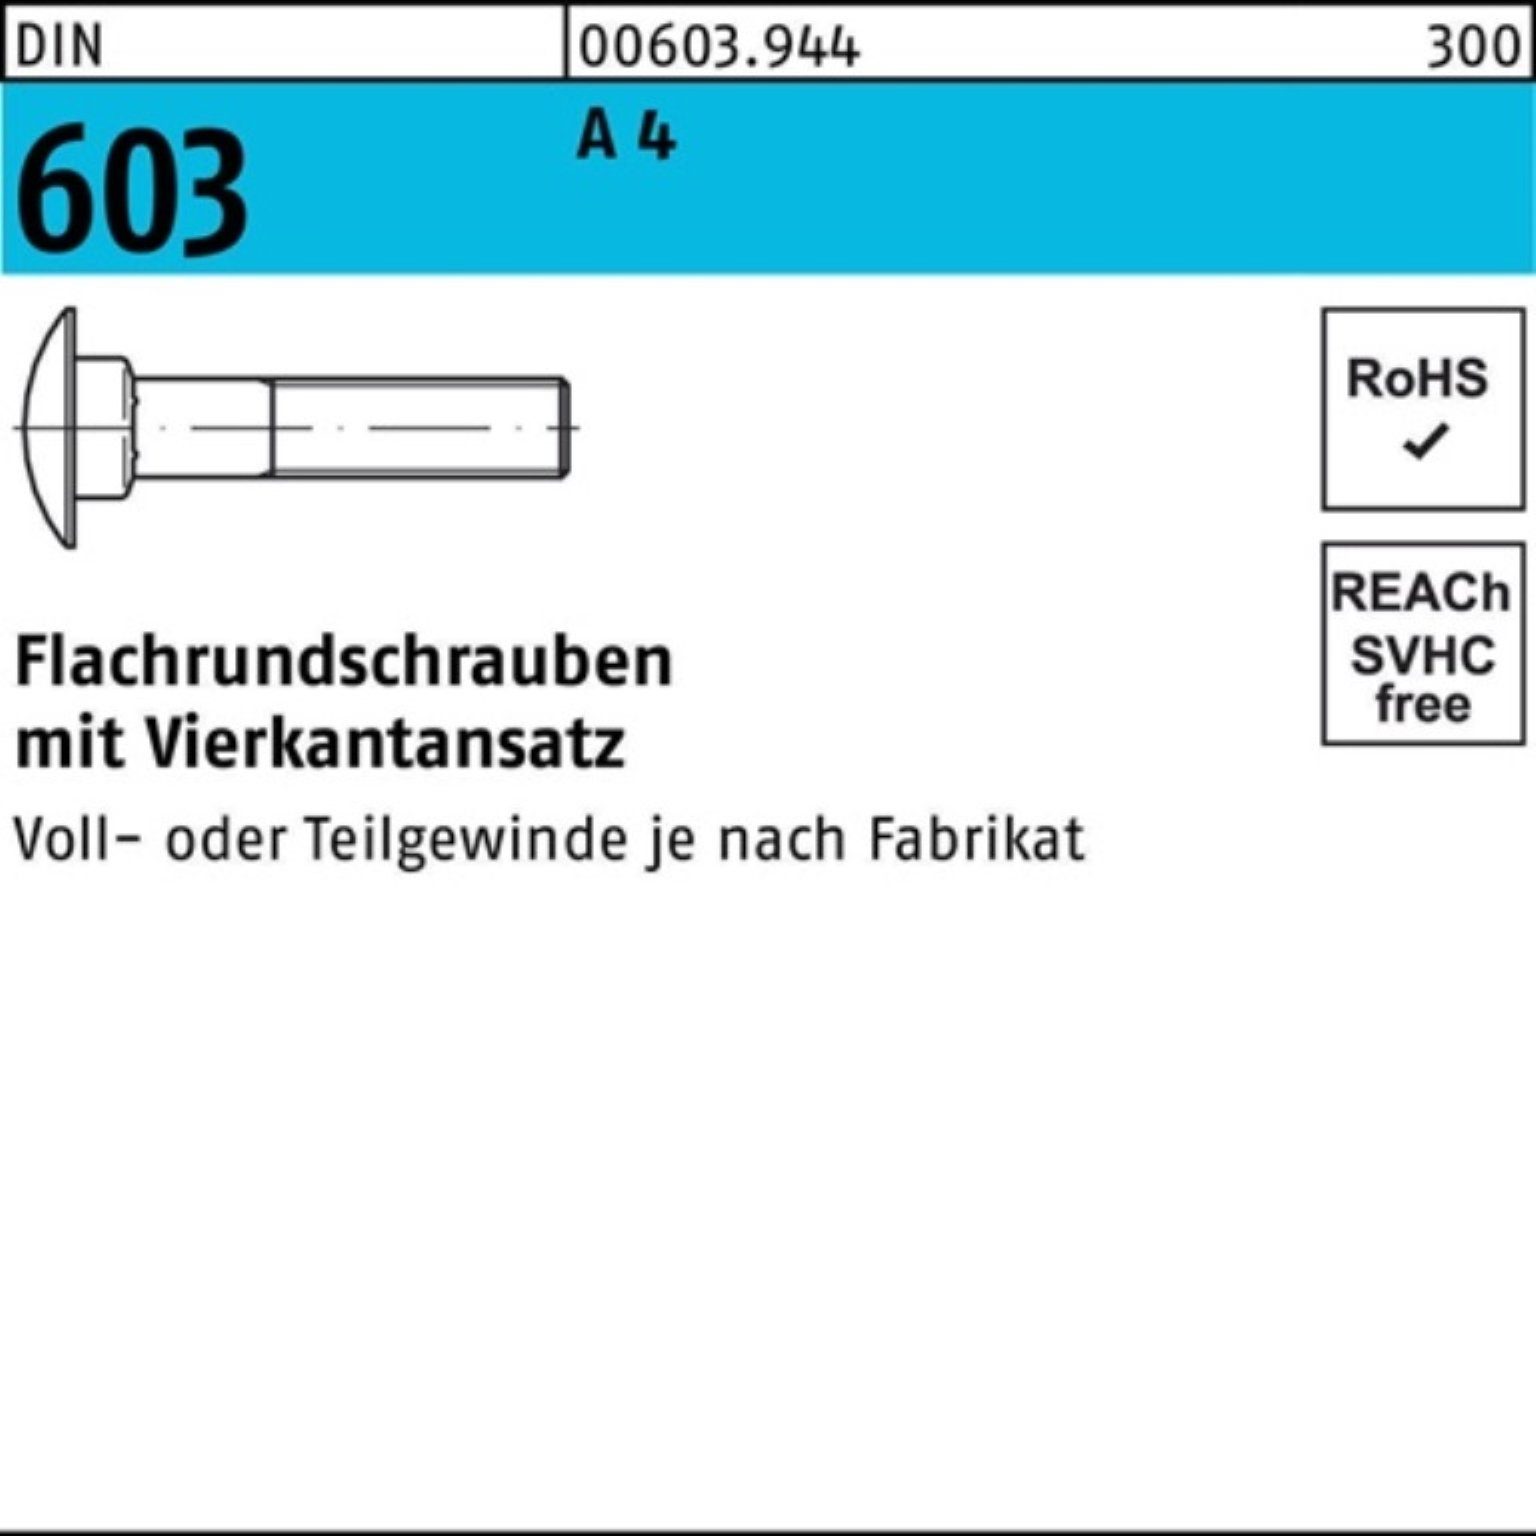 Reyher Schraube 100er Pack Flachrundschraube DIN 603 Vierkantansatz M16x 75 A 4 1 Stü